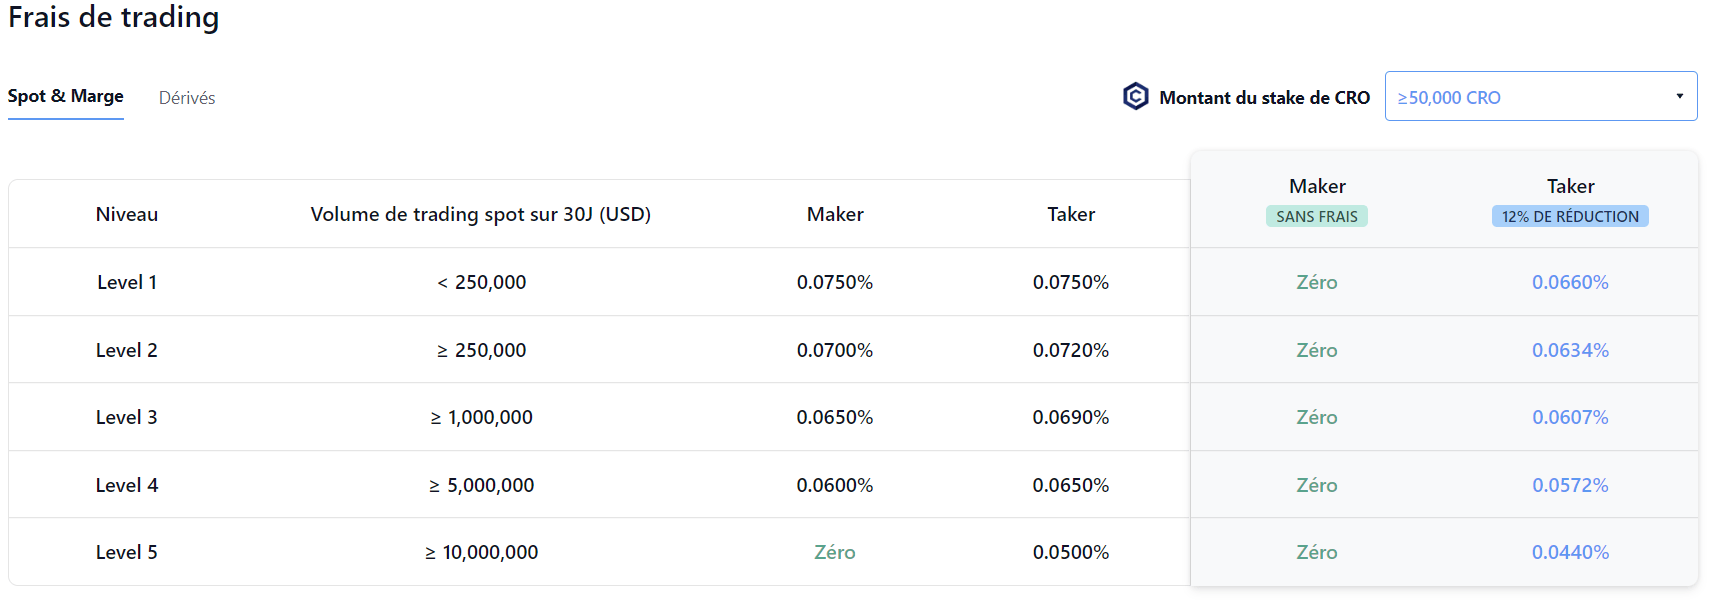 Frais de trading spot sur Crypto.com Exchange